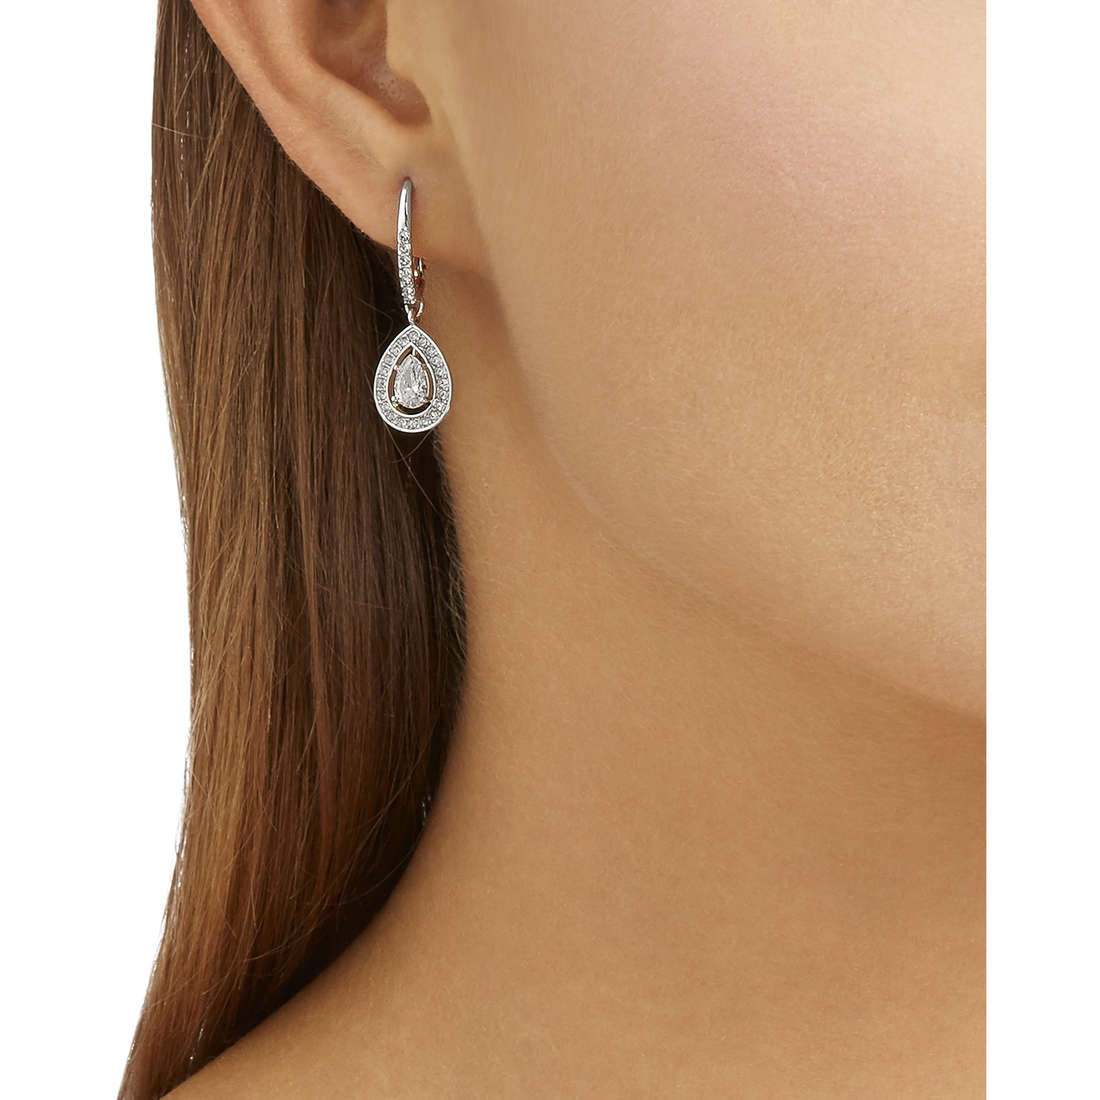 Swarovski earrings Attract Light woman 5197458 wearing